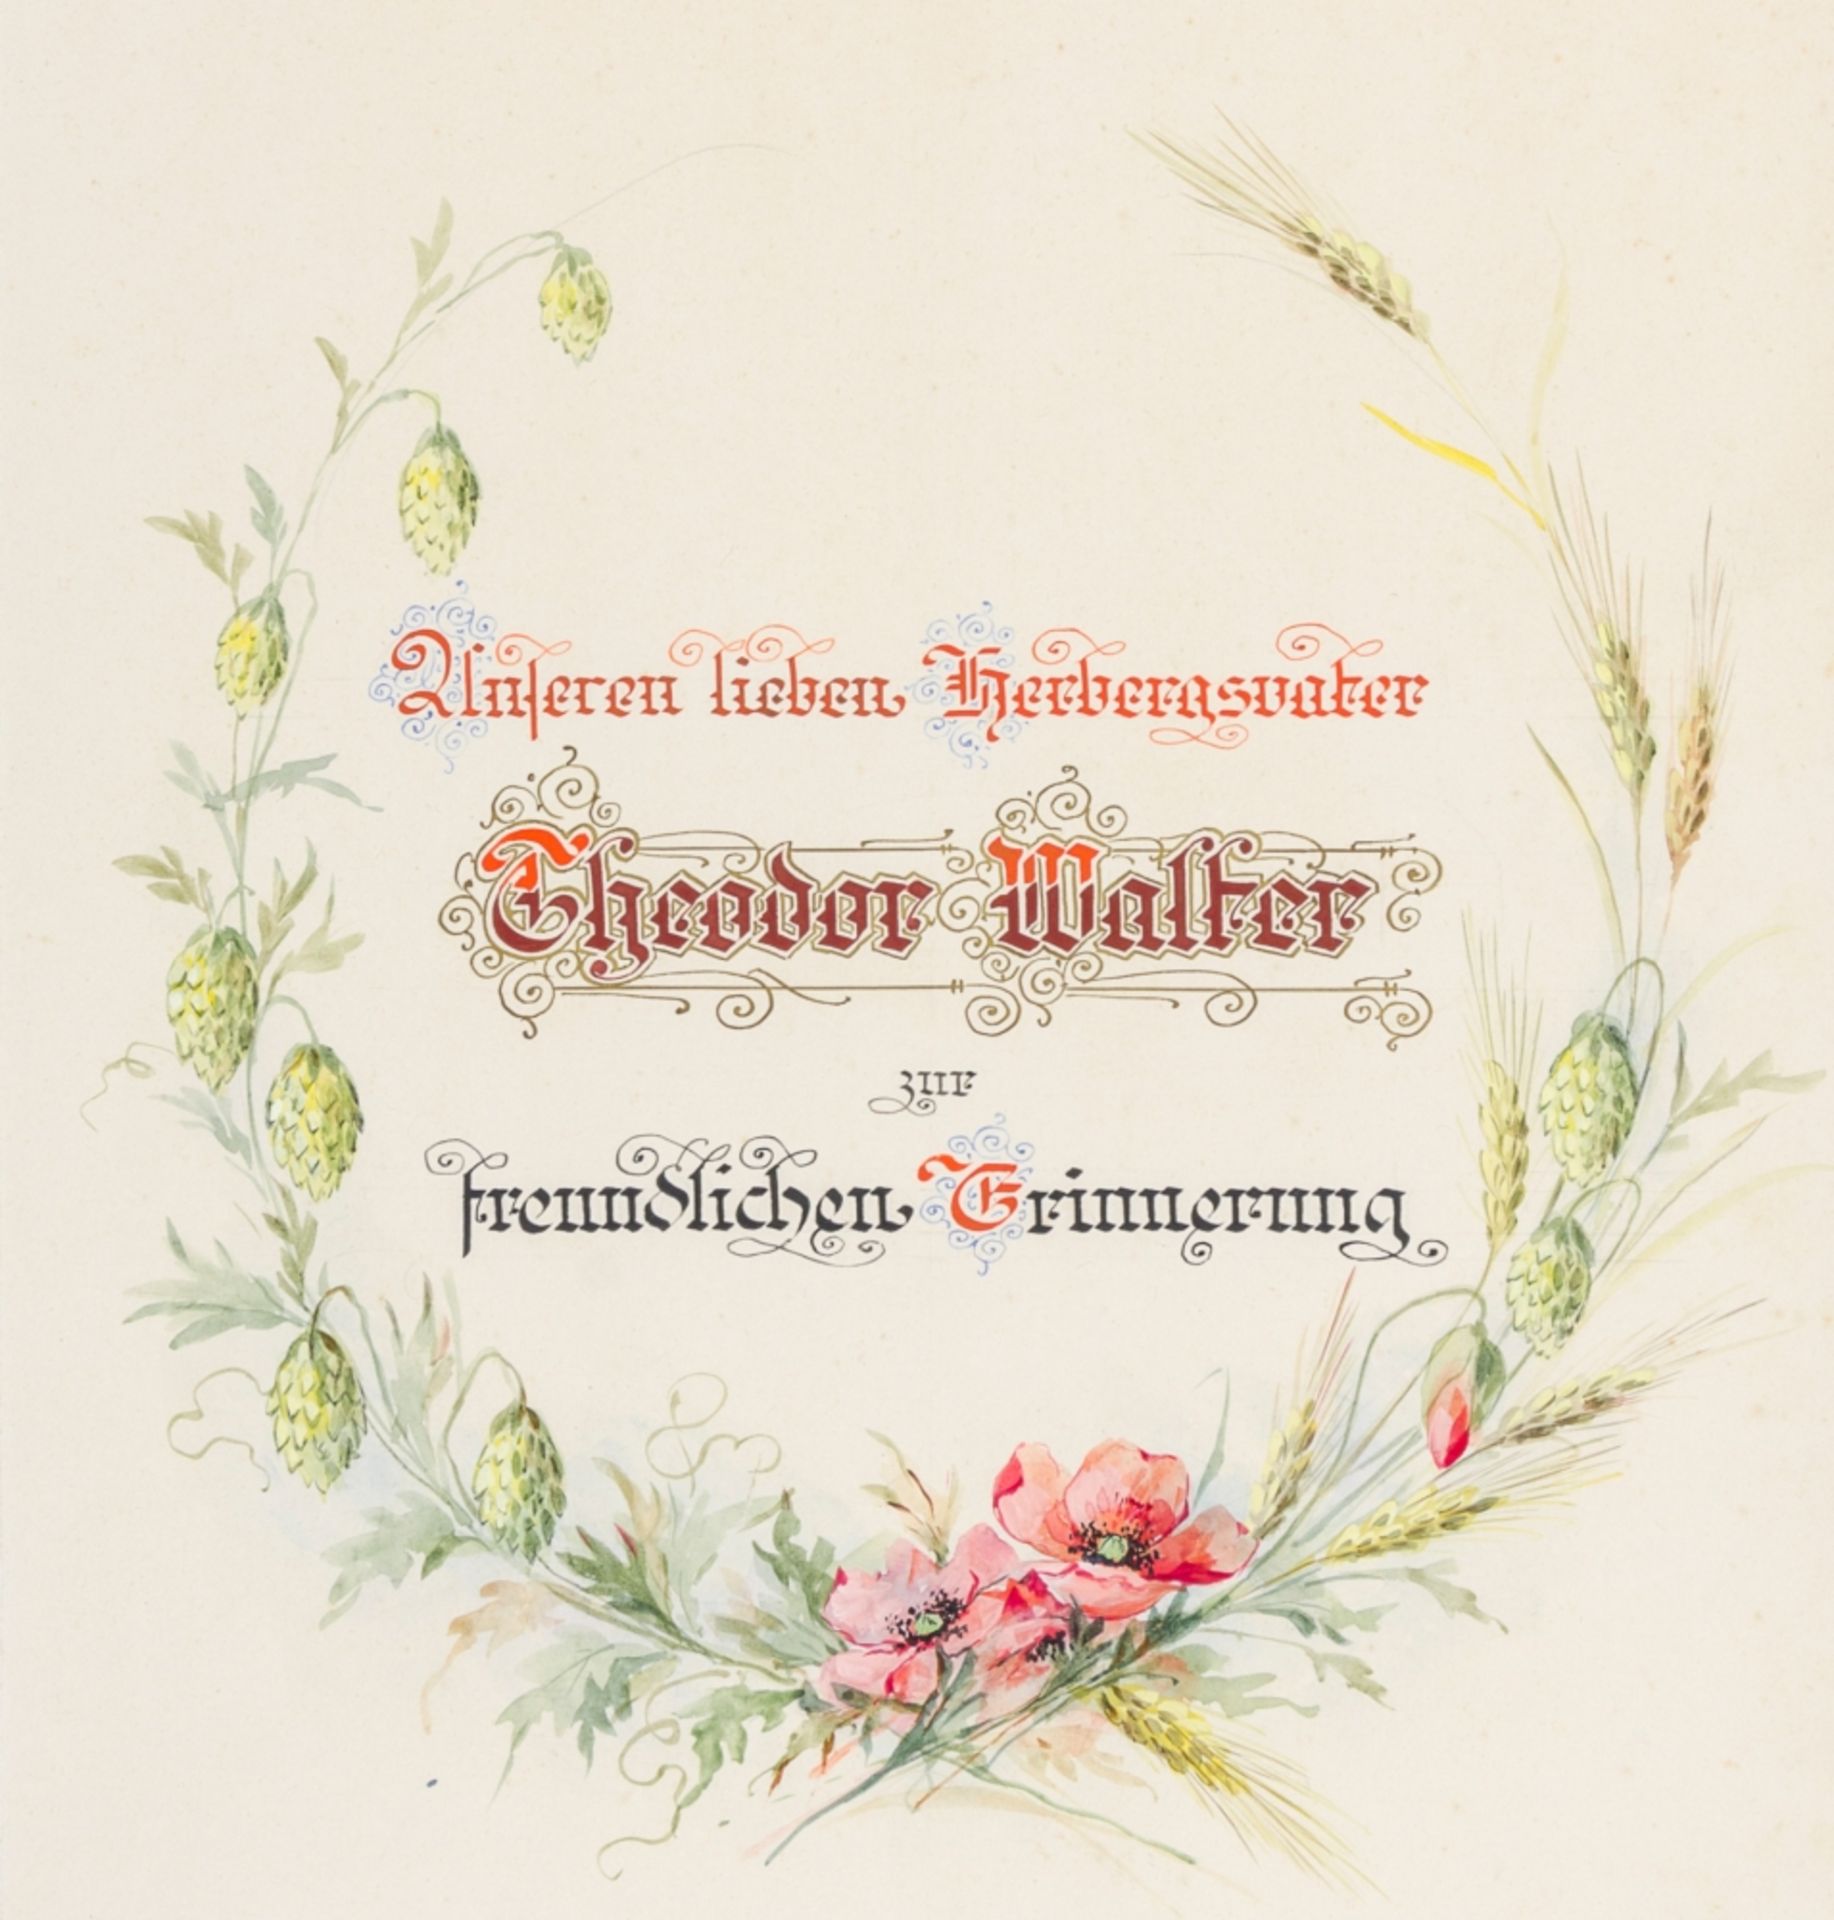 Wiener Jugendstil - - - Image 2 of 2